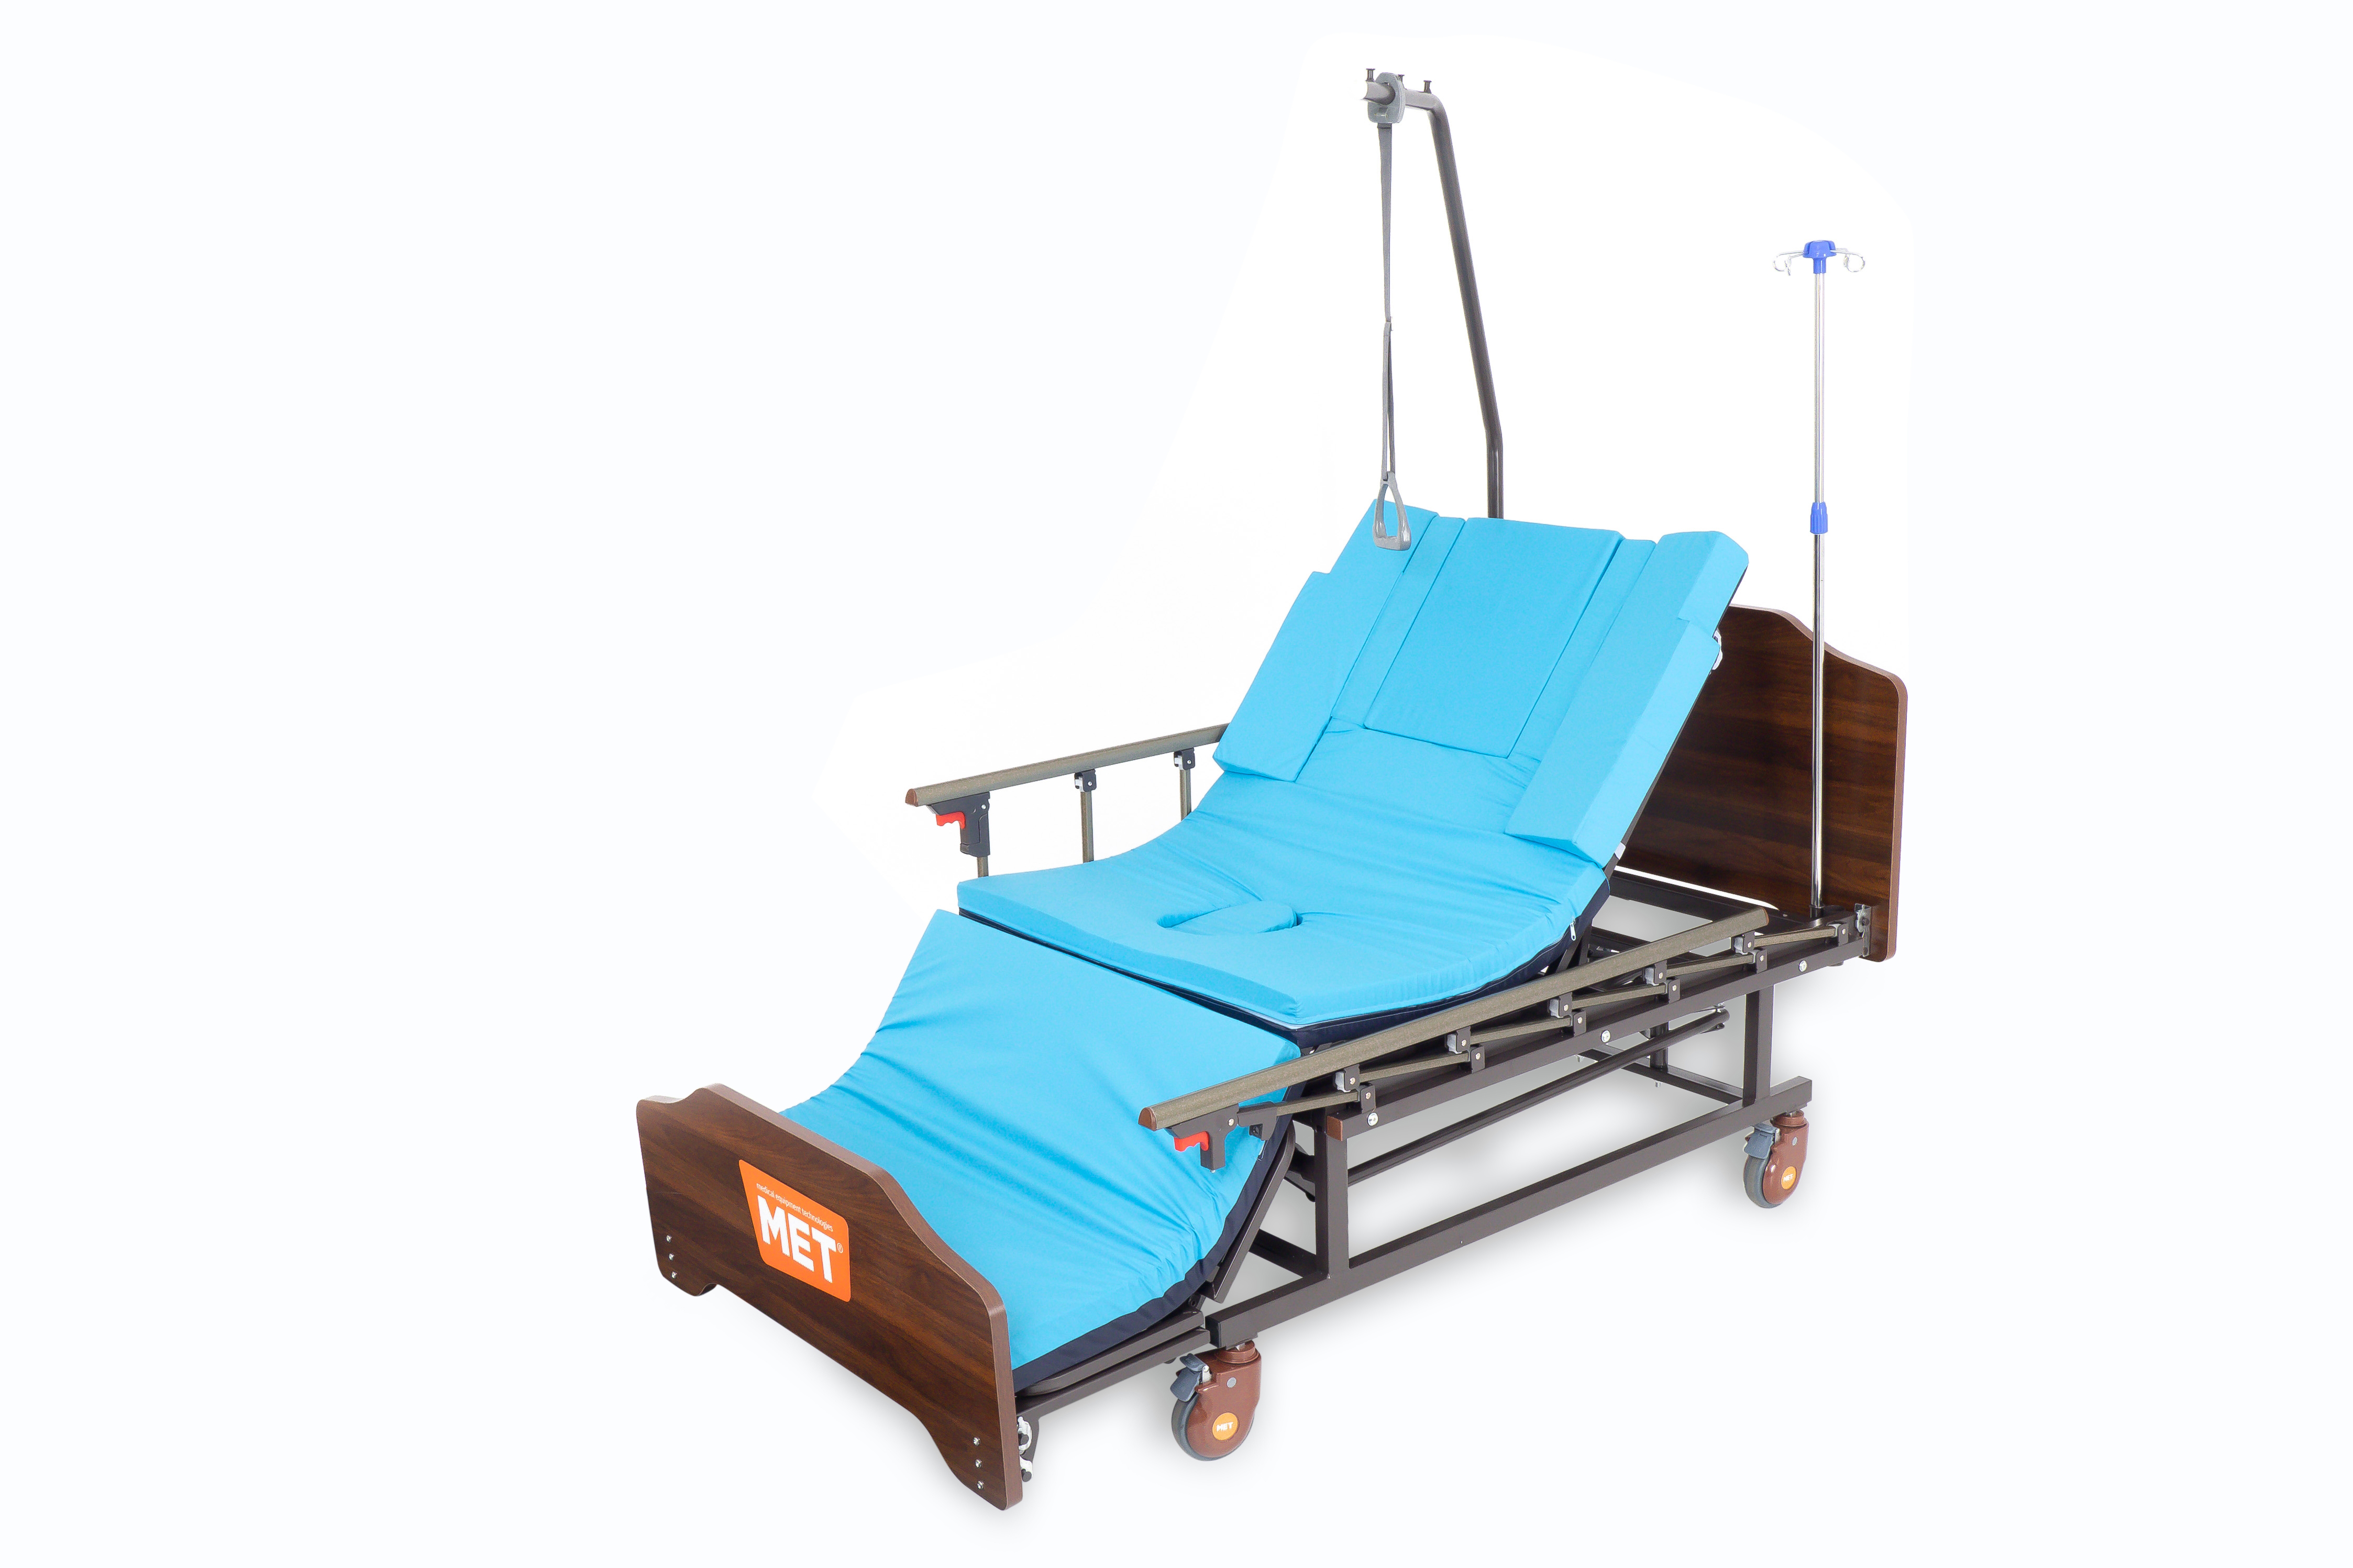 Мет remeks медицинская кровать для ухода за лежачими больными с переворотом туалетом и матрасом